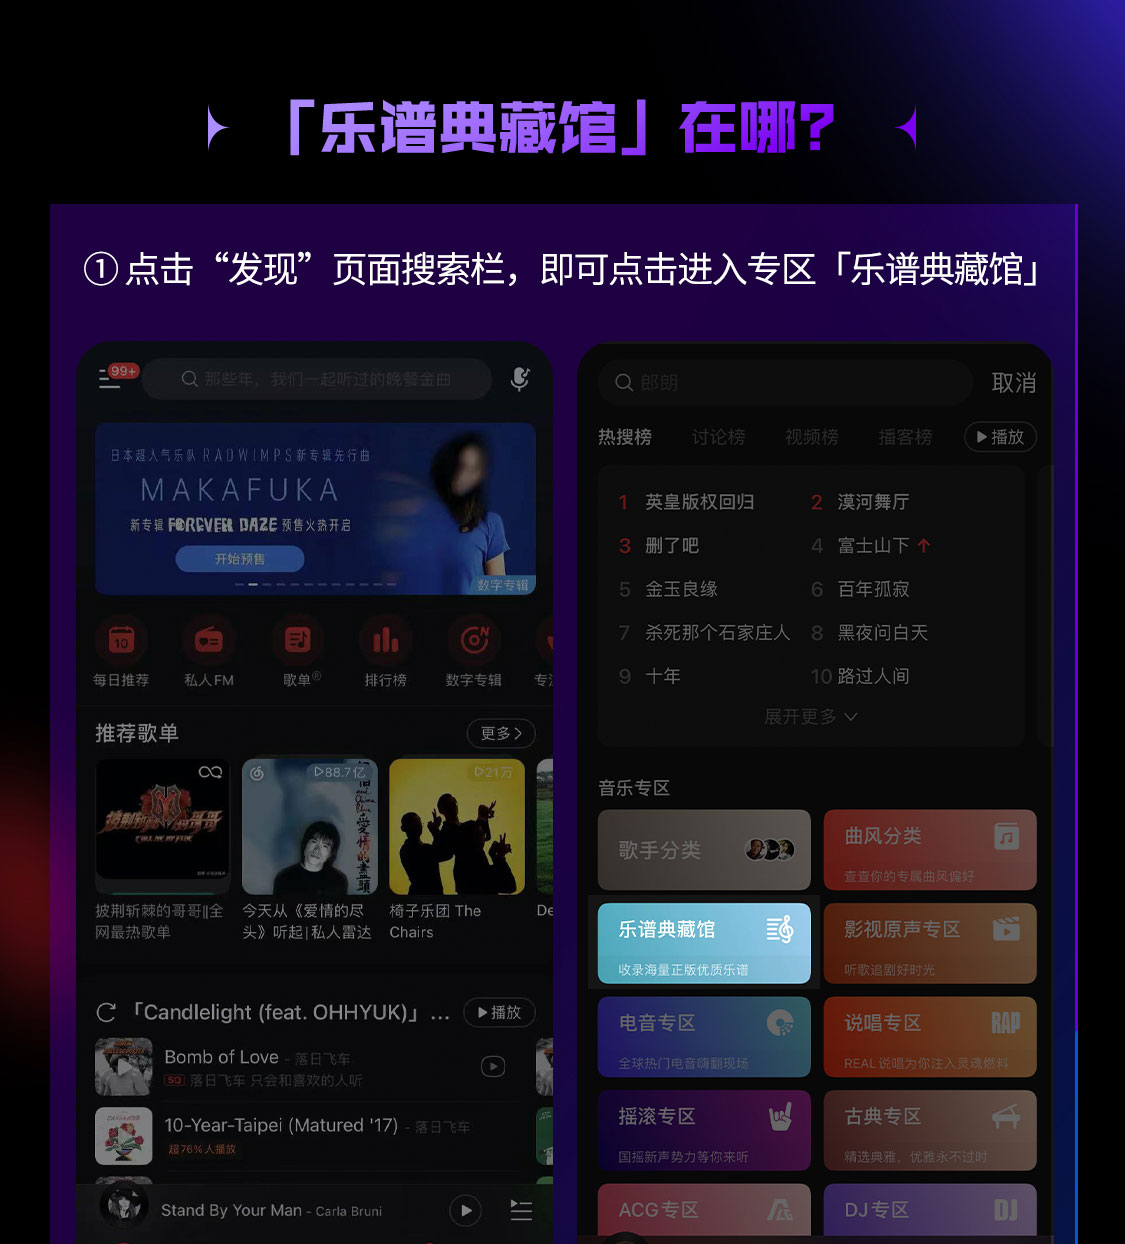 网易云音乐全新升级乐谱功能 华语热歌、吉他弹唱、古琴名曲等大量UGC乐谱上线